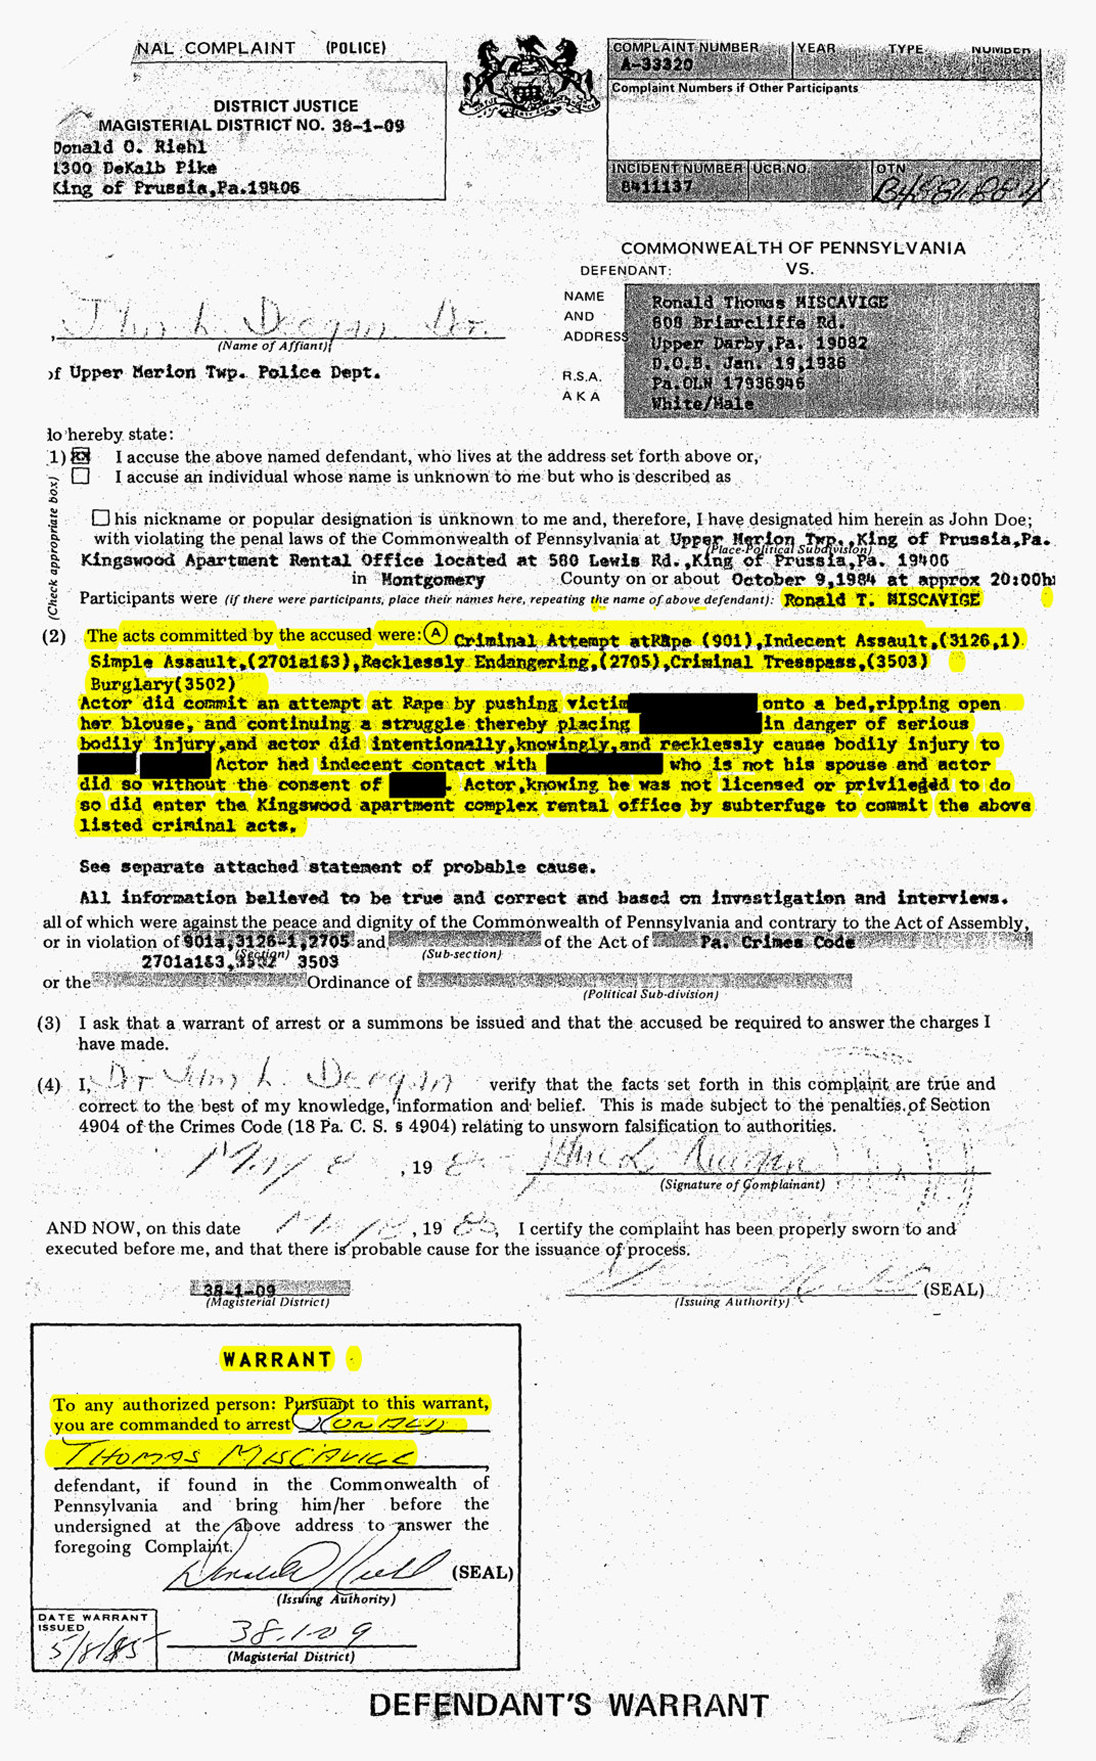 Ron Miscavige’s Sr. arrest documents